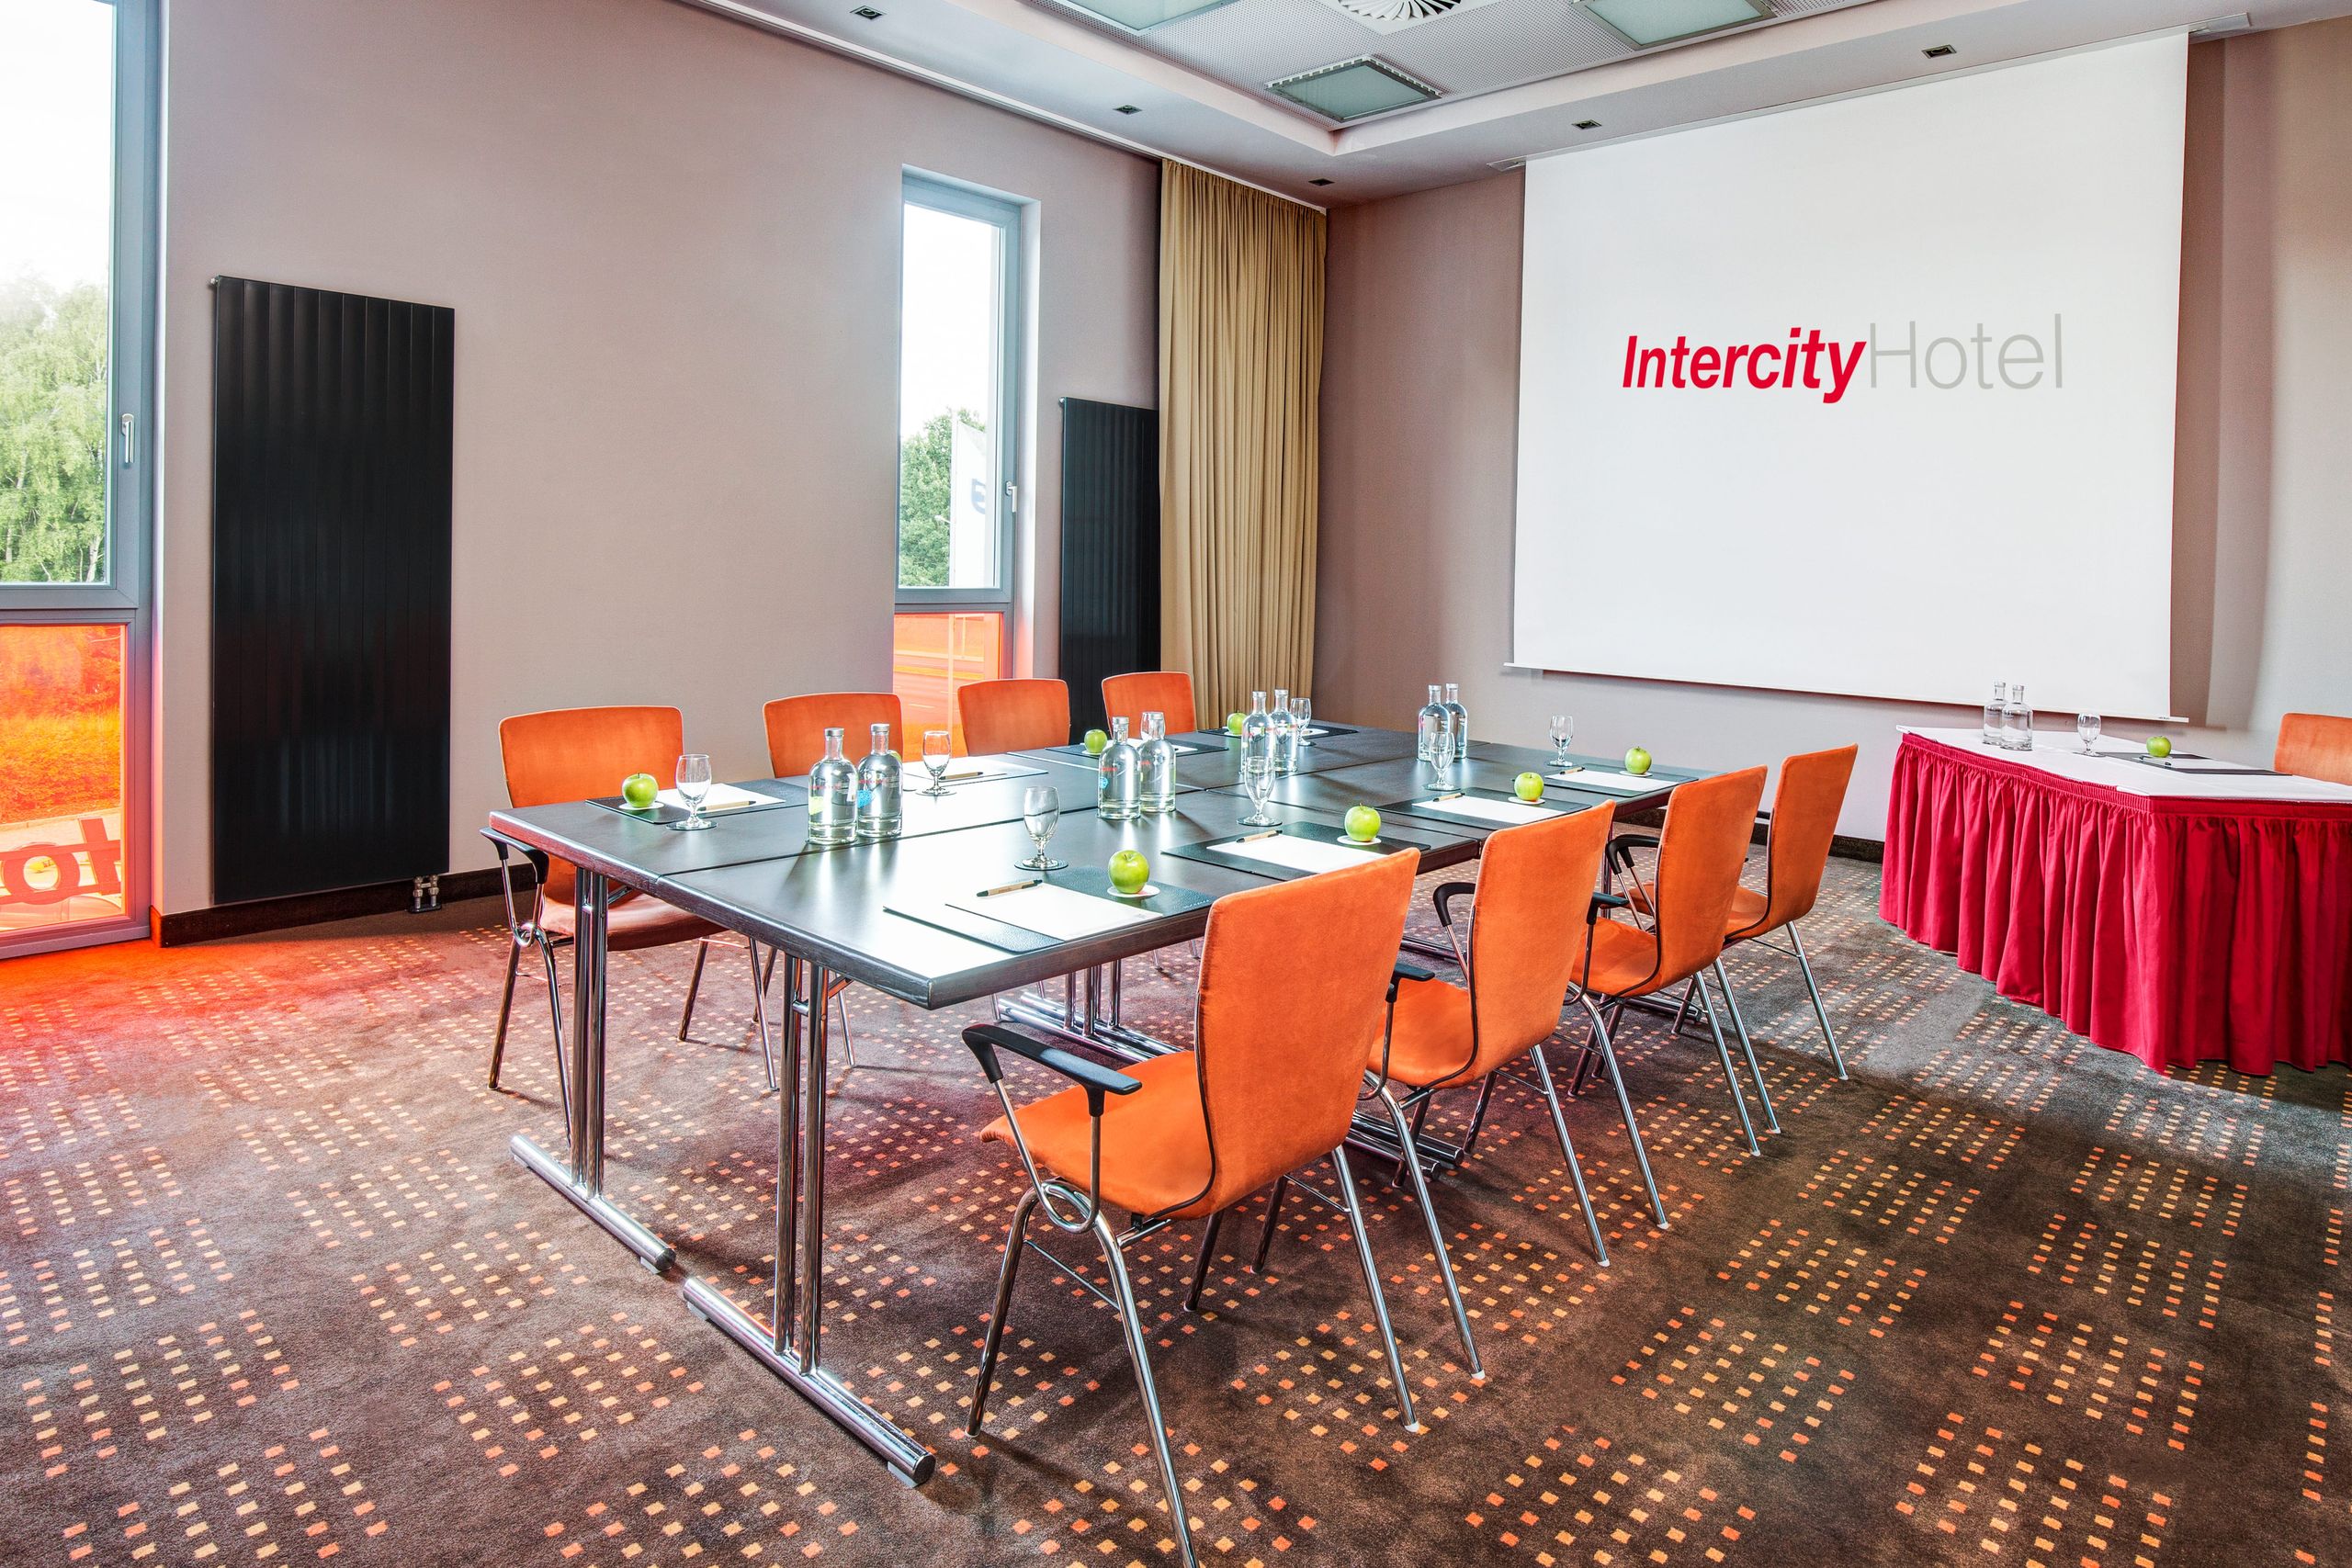 IntercityHotel Berlin-Brandenburg Lufthavn - Møder & Events - Konferencelokaler